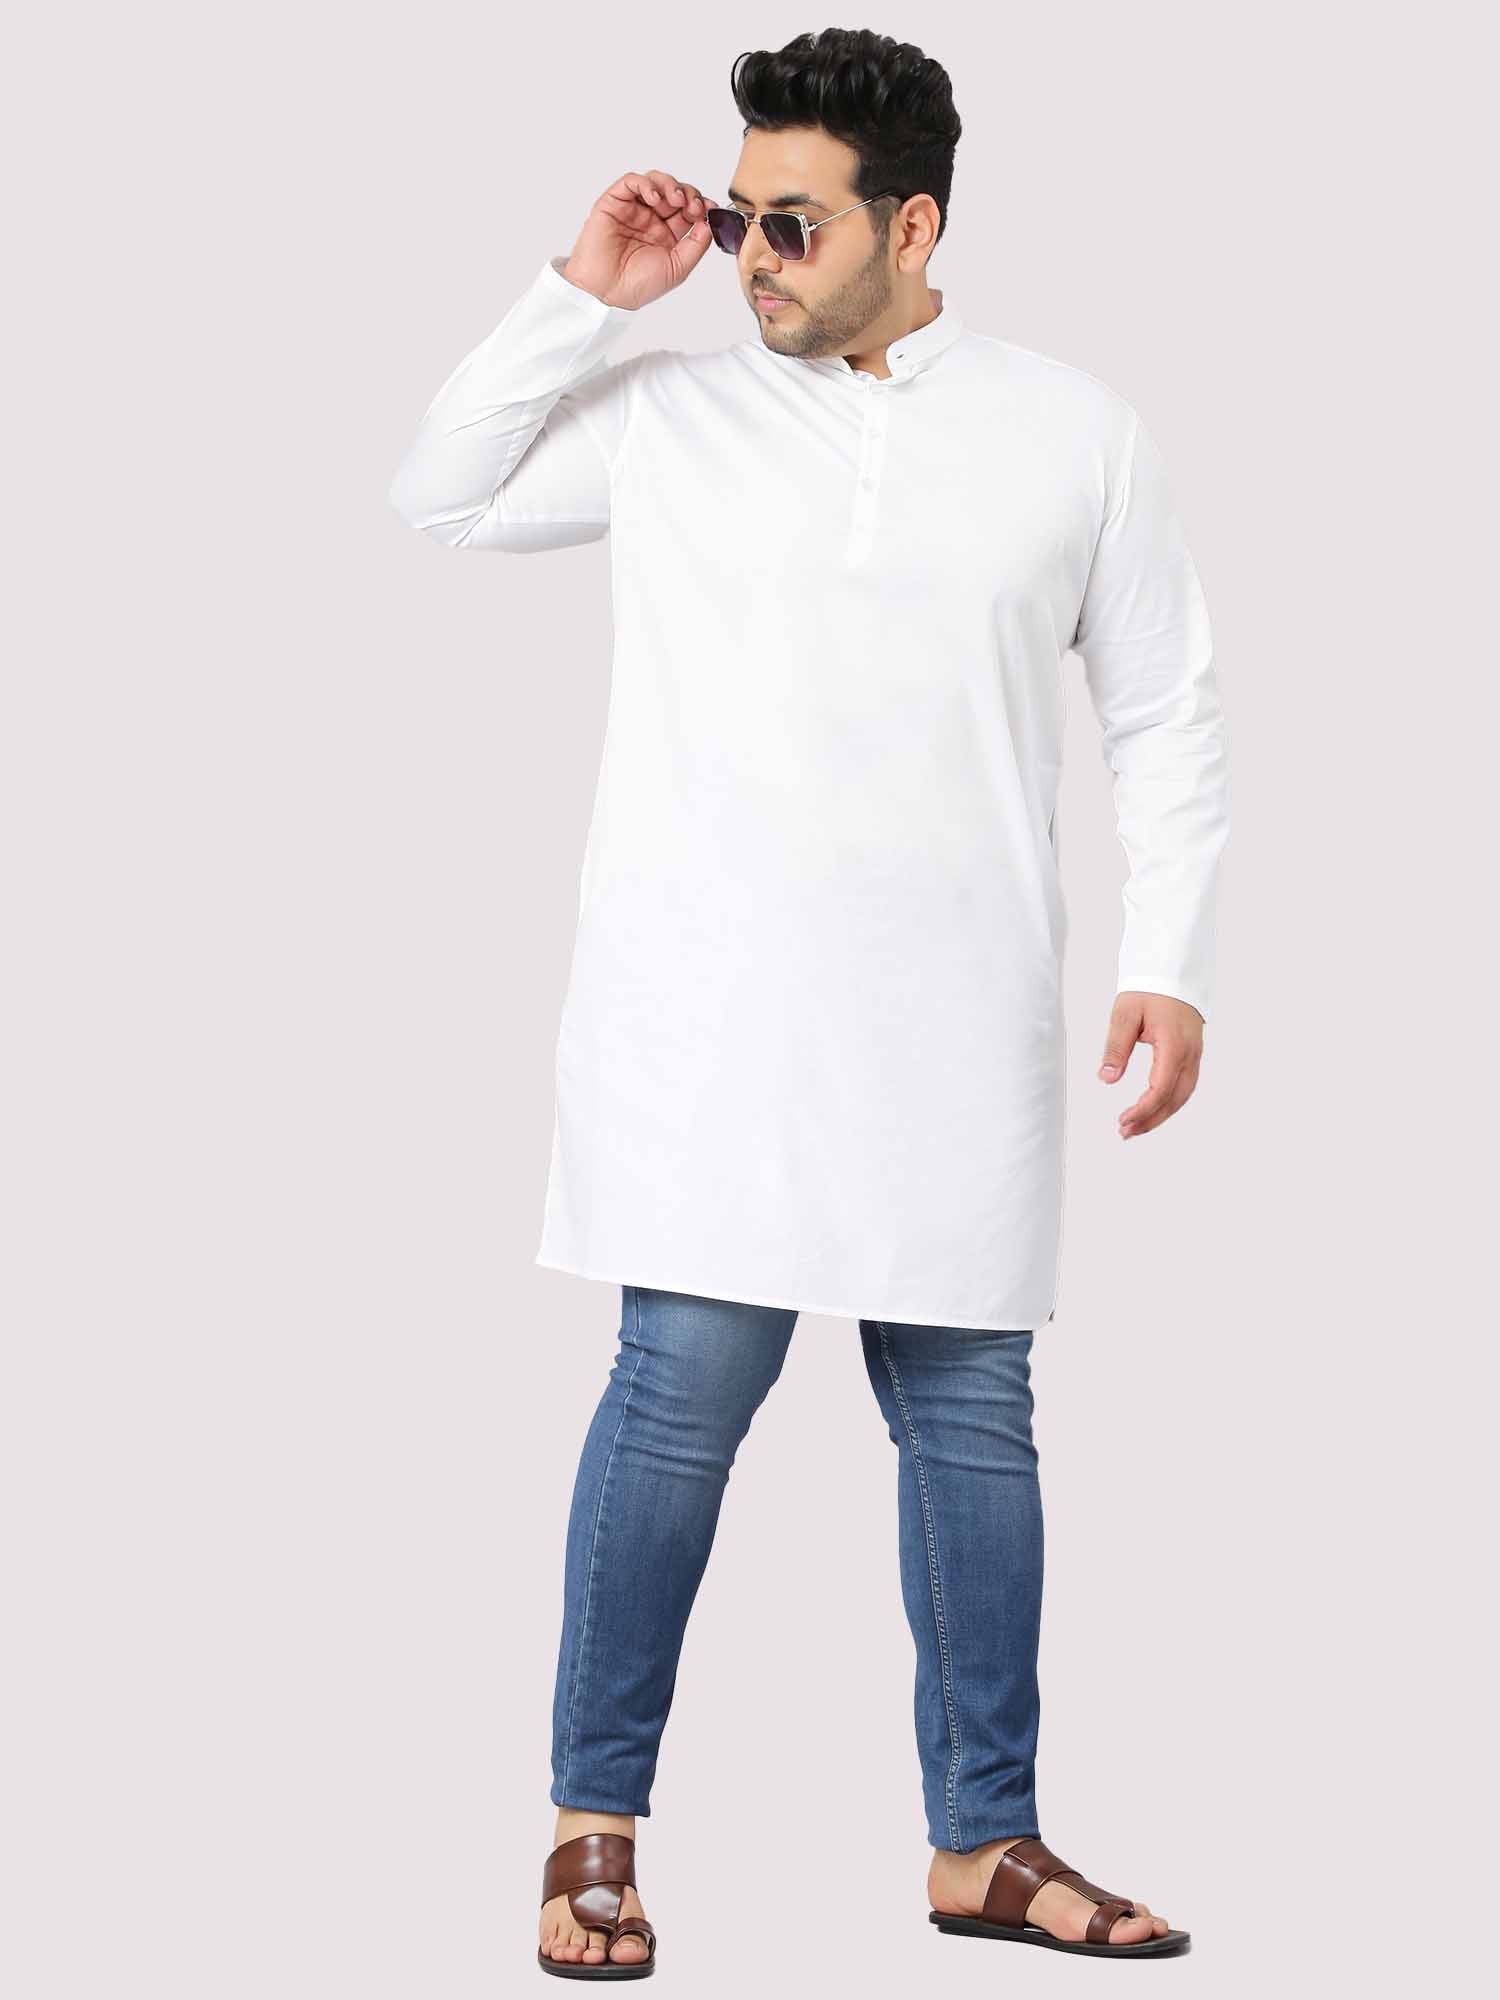 Calmania The Soothing White Full Sleeve Kurta Men's Plus Size